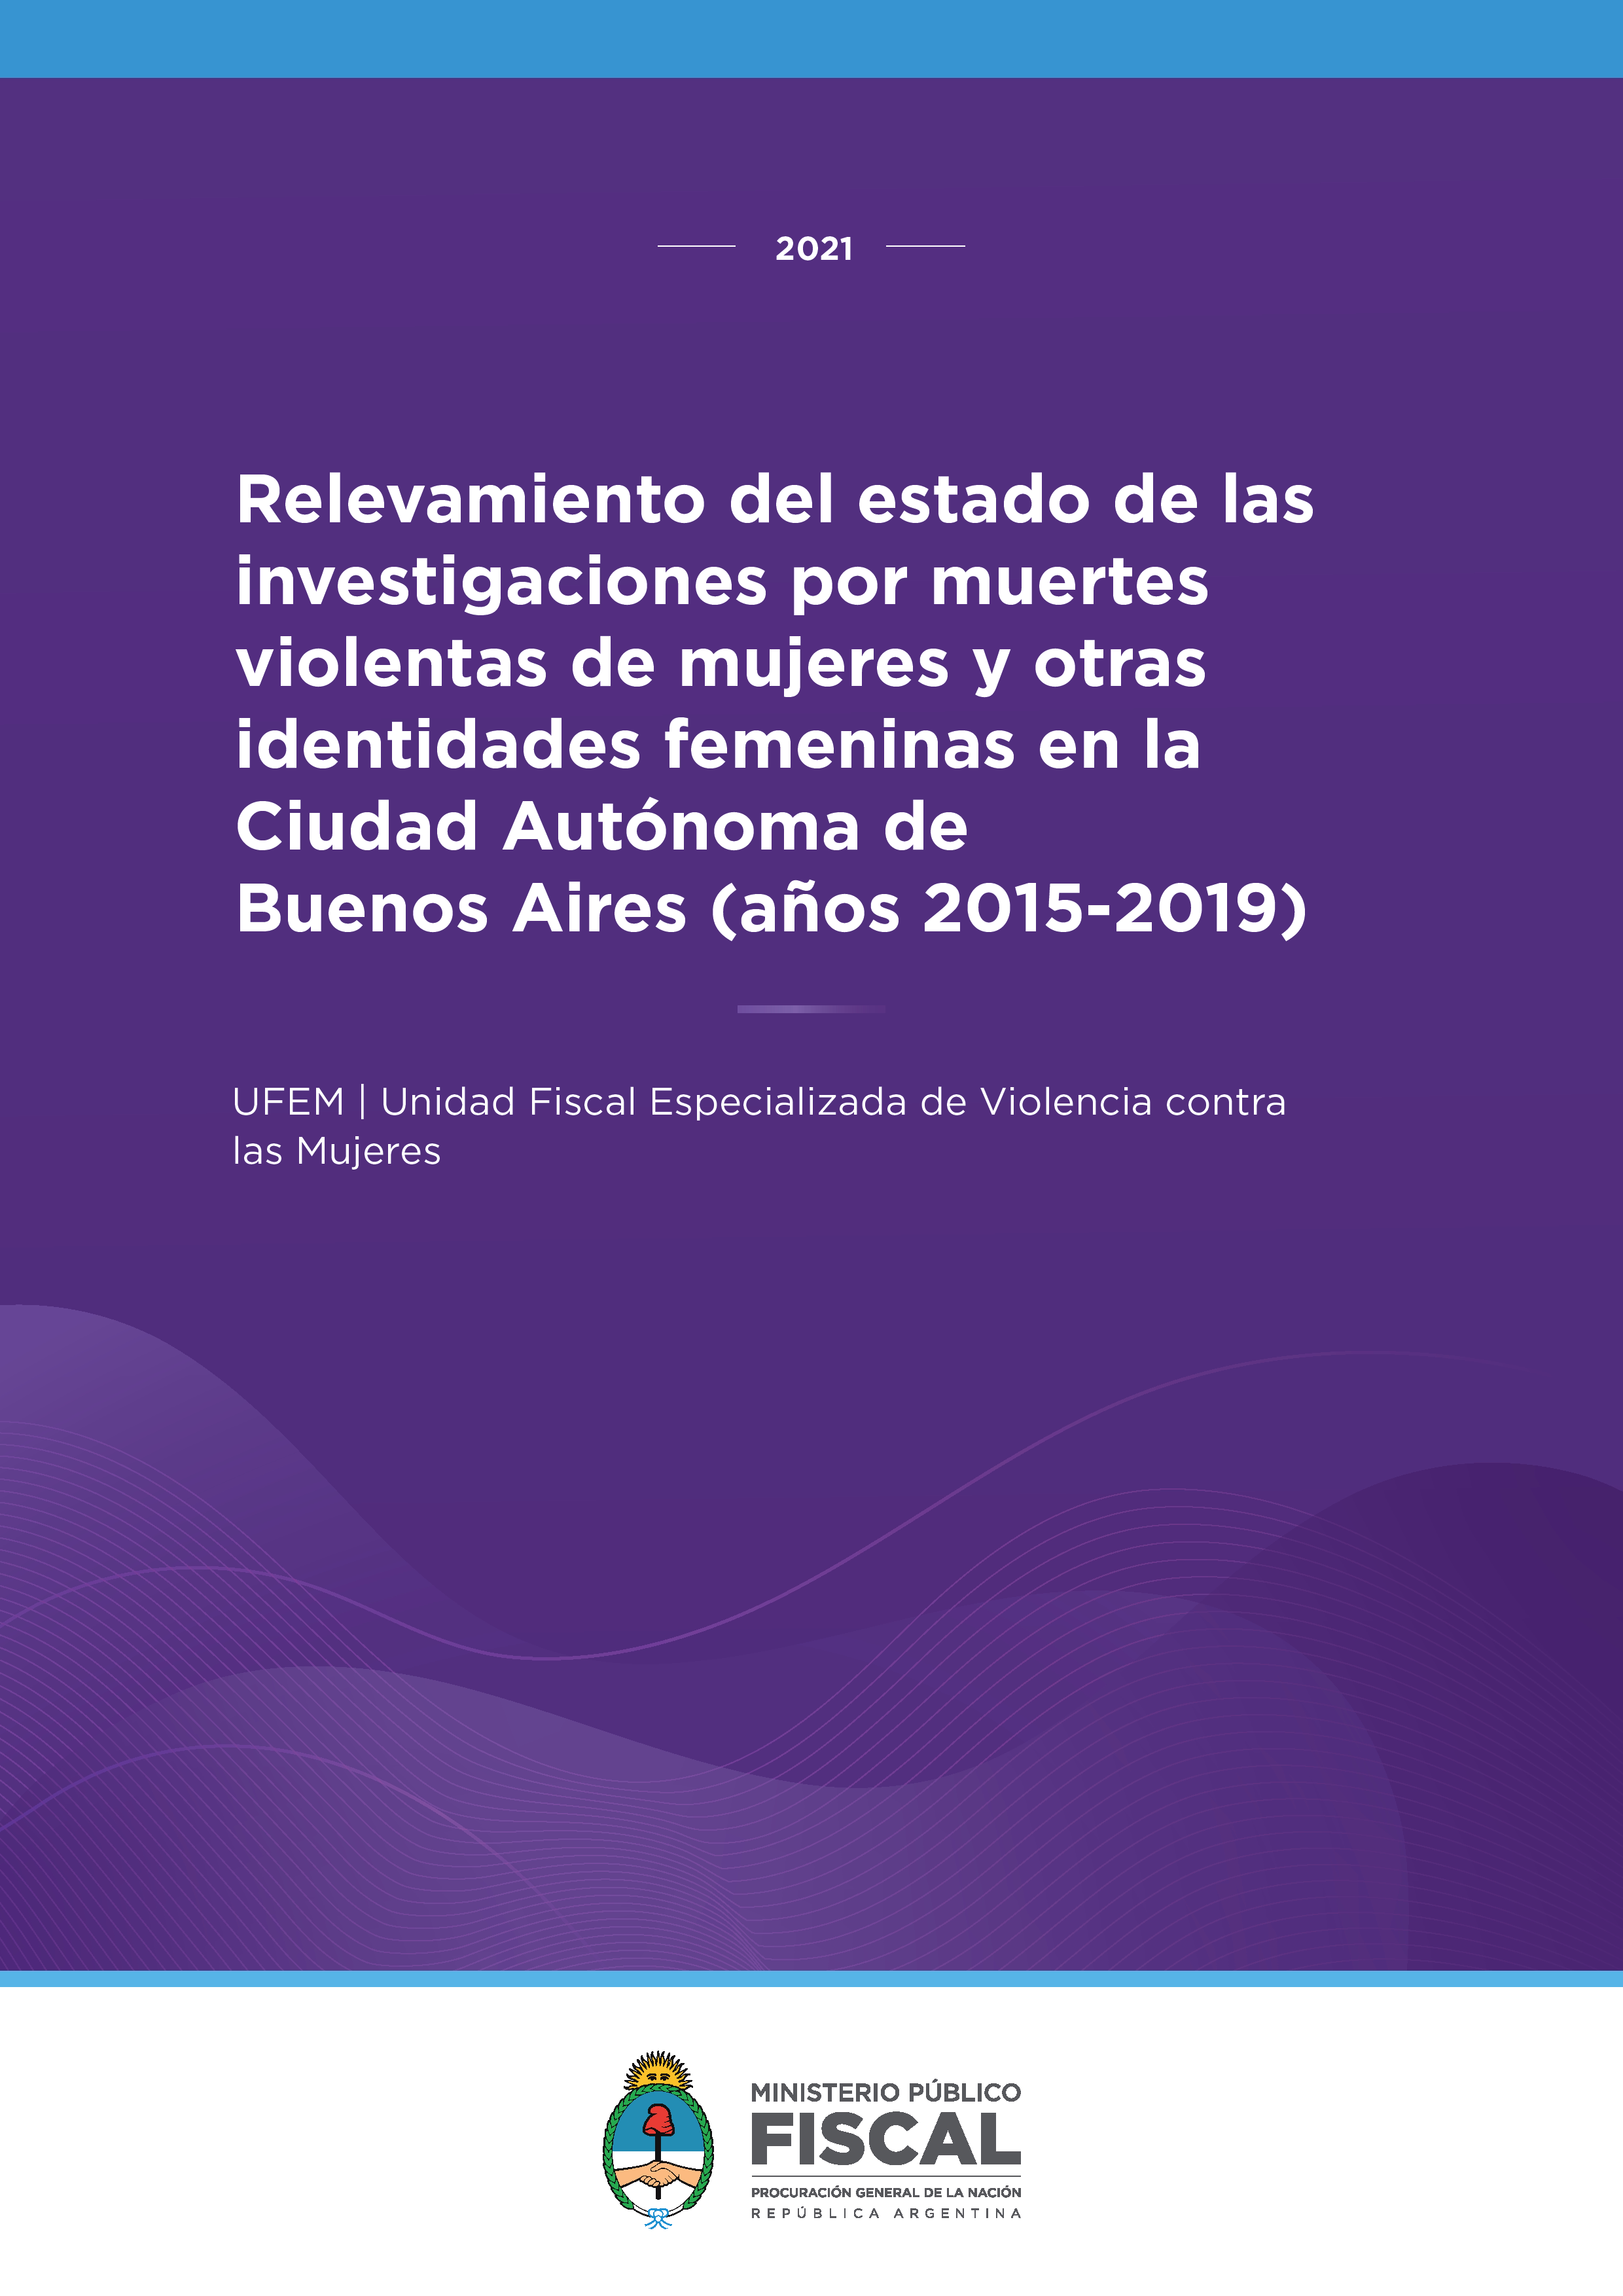 Relevamiento del estado de las investigaciones por muertes violentas de mujeres y otras identidades femeninas en la Ciudad Autónoma de Buenos Aires (años 2015-2019)